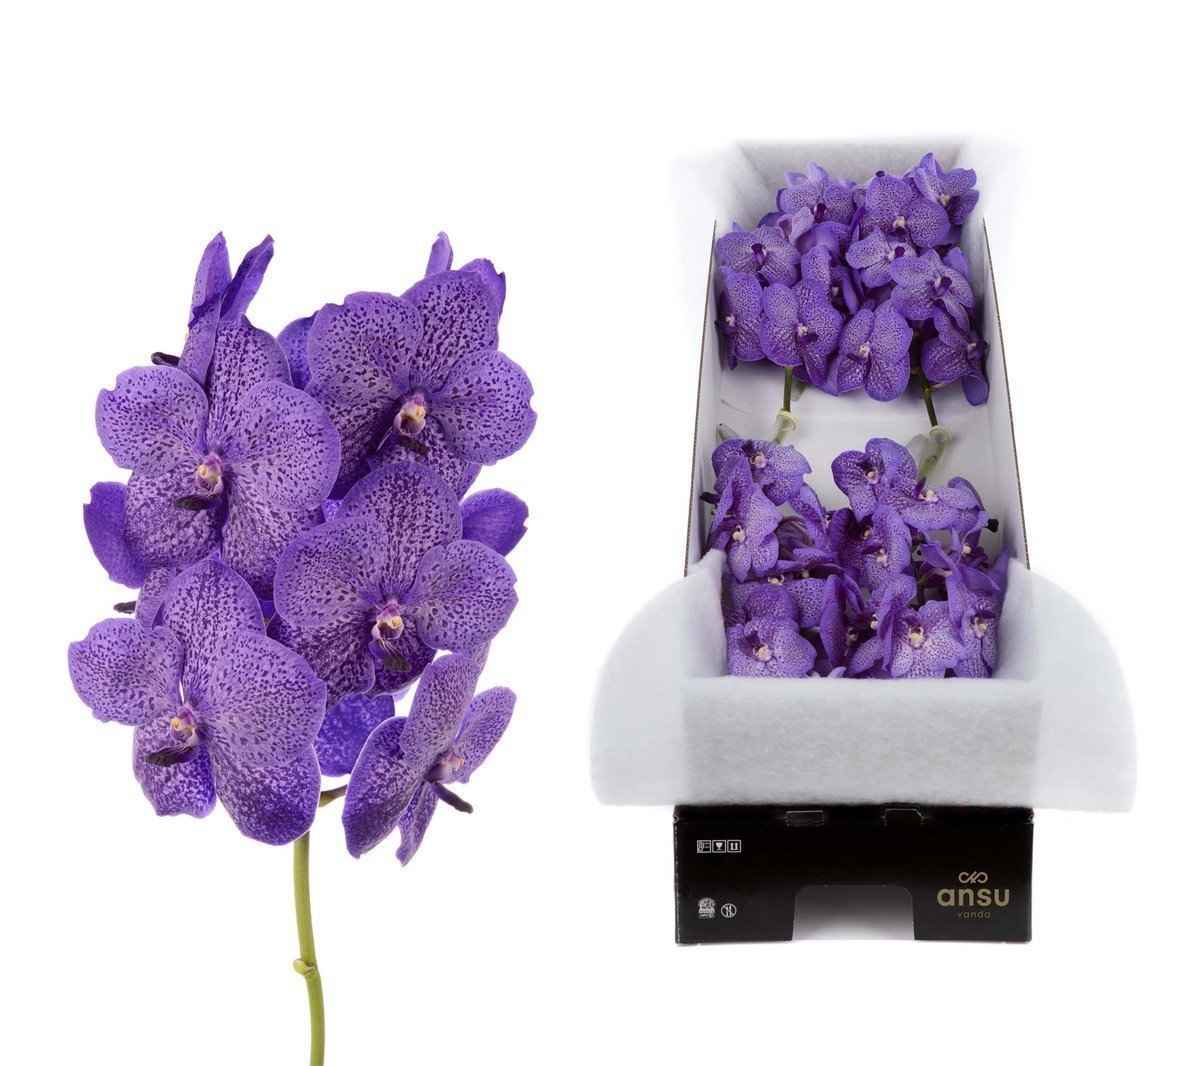 Срезанные цветы оптом Vanda sunanda lavender sprinkles per stem от 4шт. из Голландии с доставкой по России